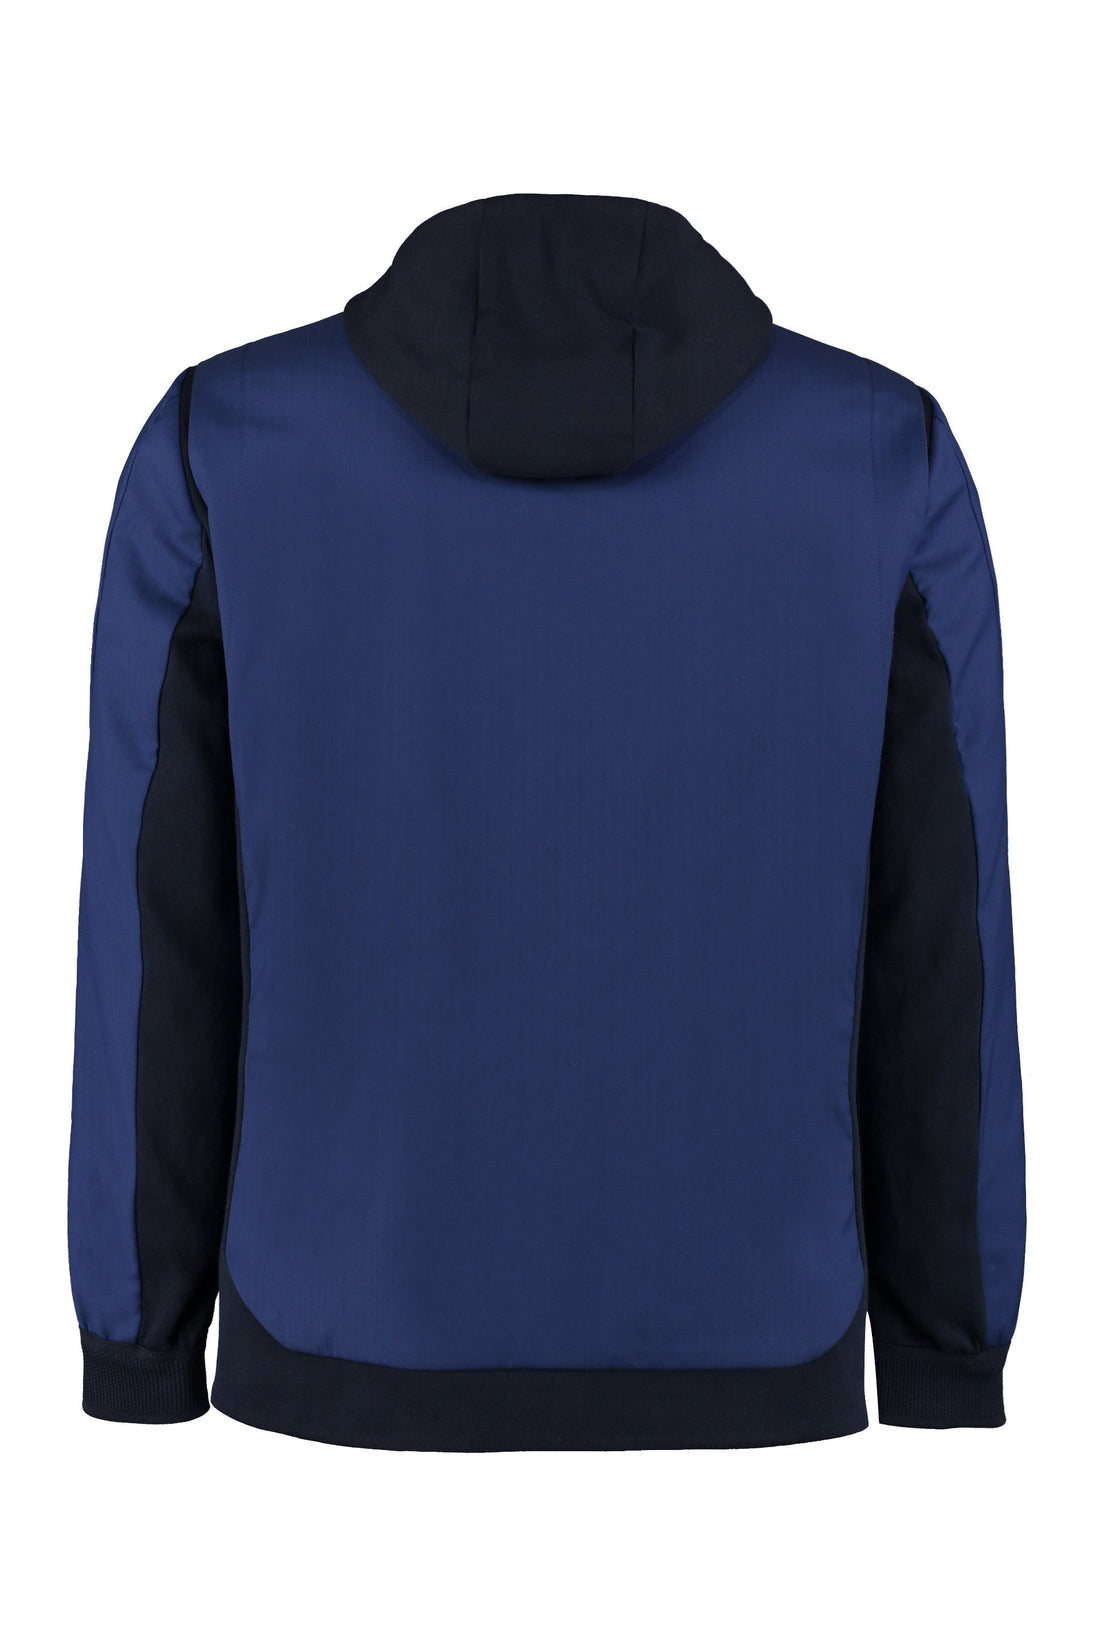 Sease-OUTLET-SALE-Wool-cotton blend sweatshirt-ARCHIVIST